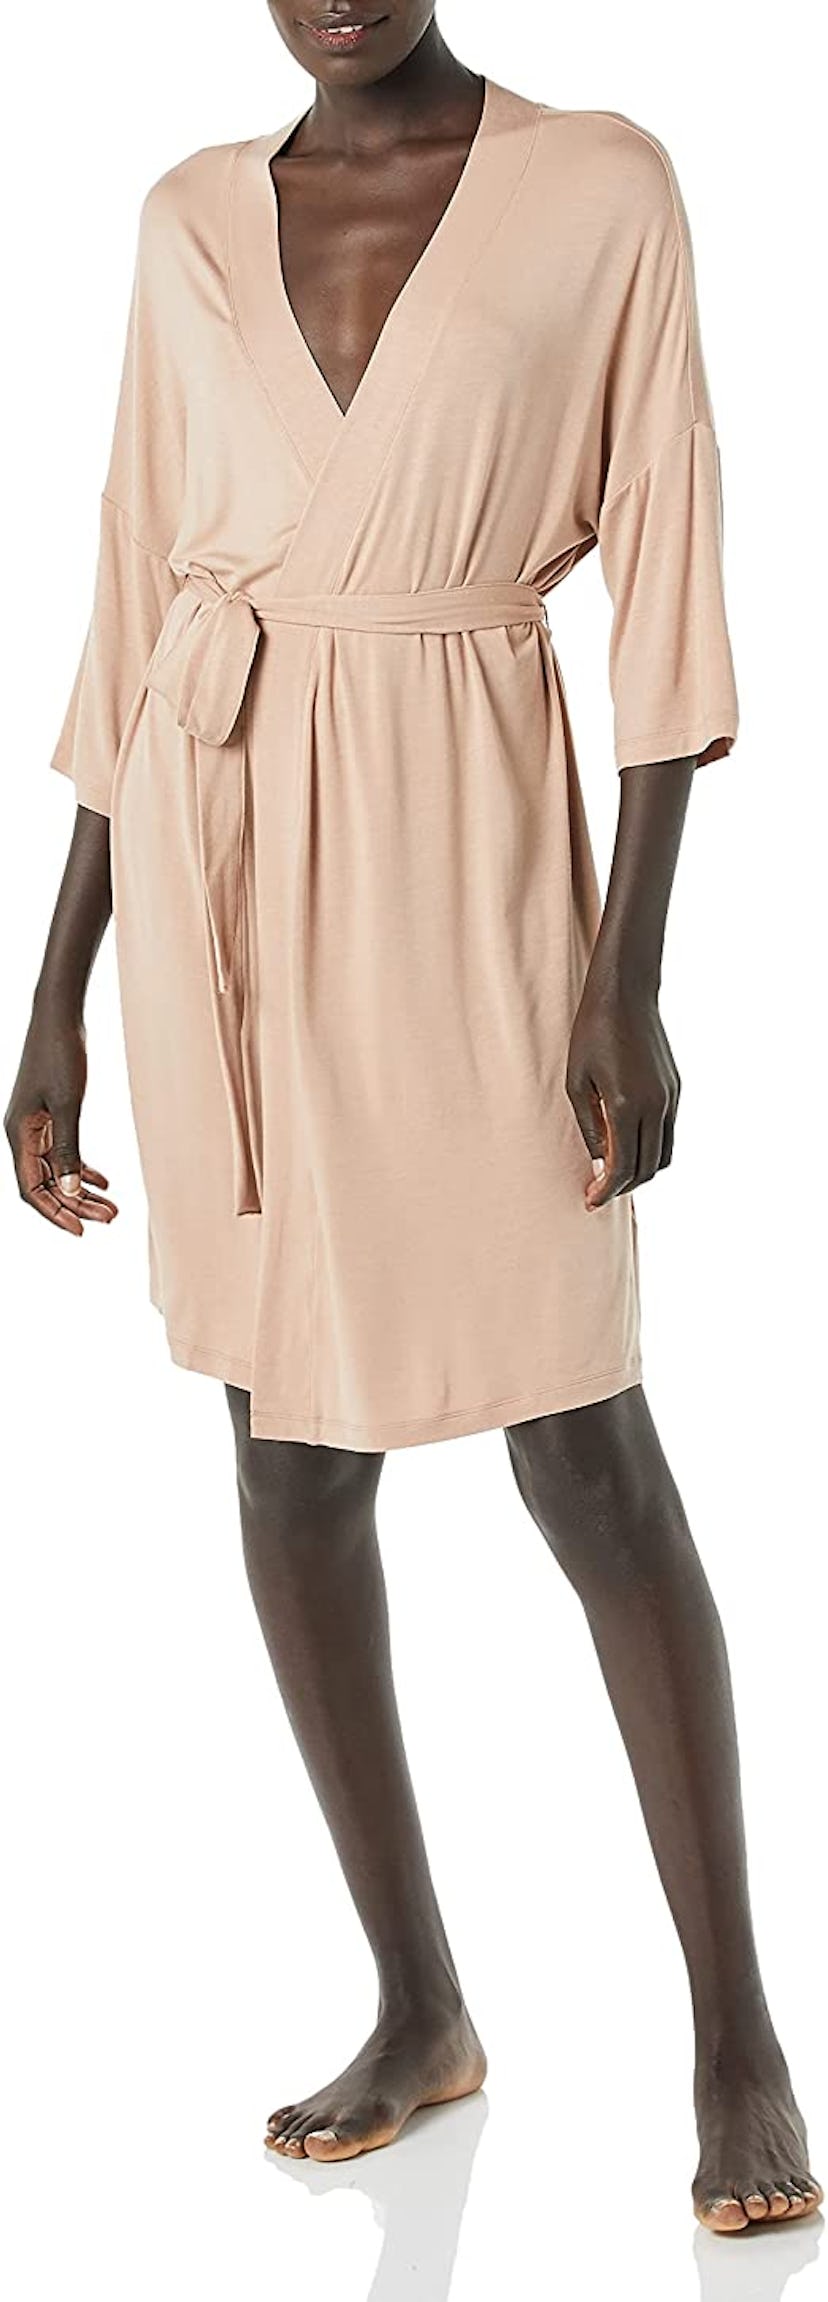 Amazon Essentials Knit Robe